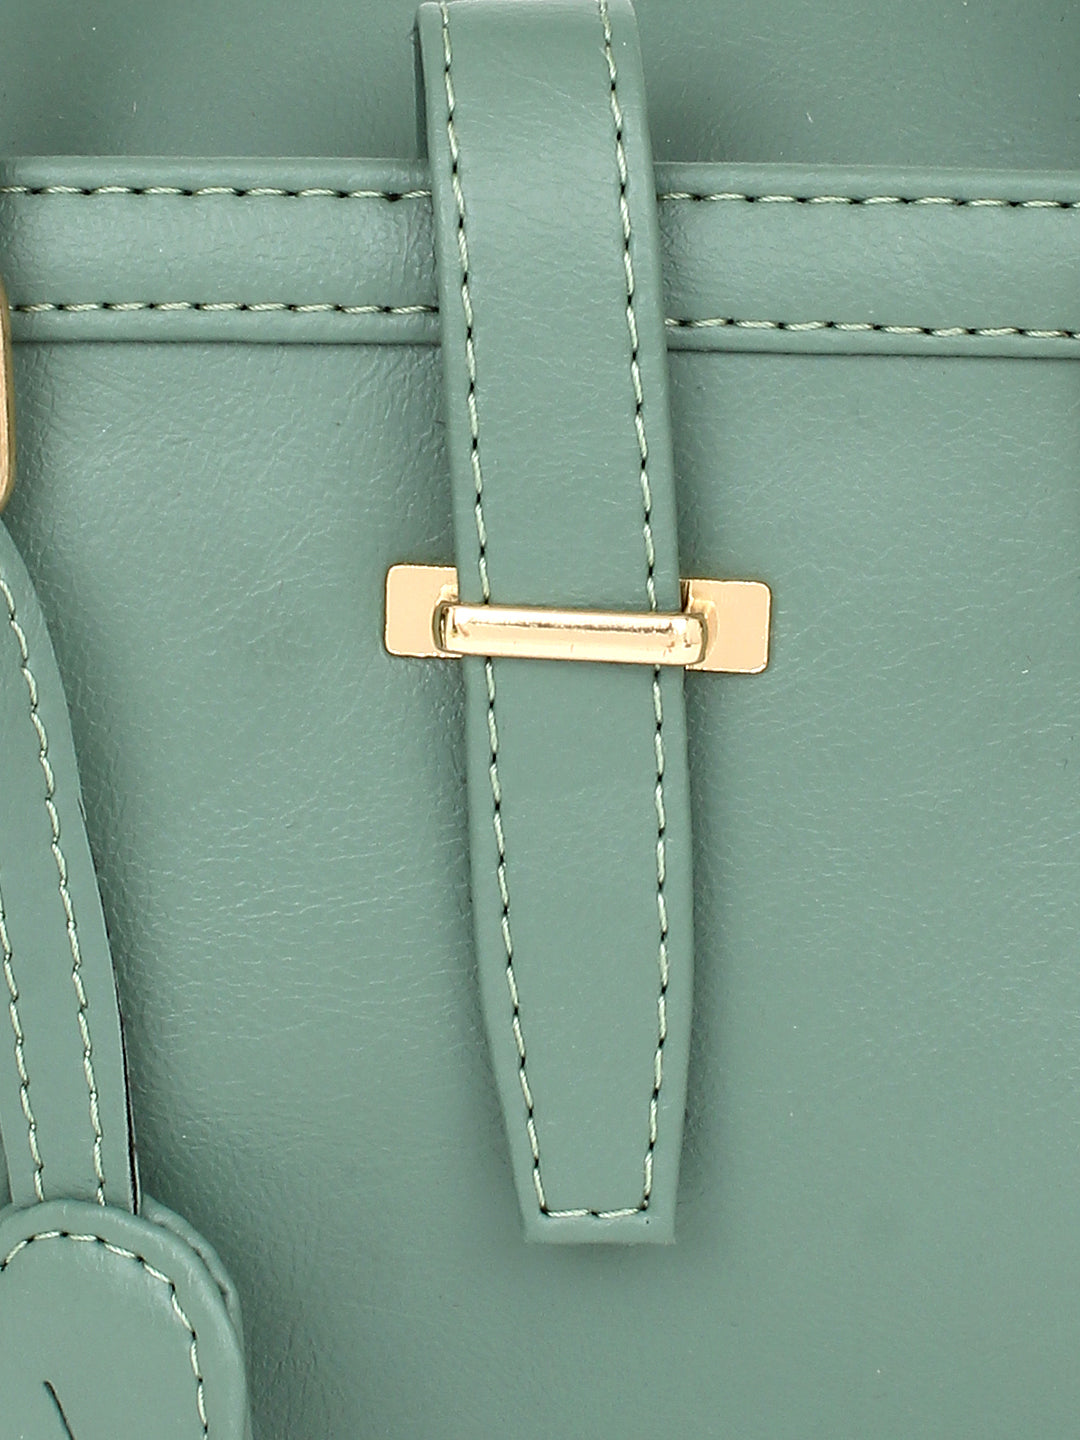 Green satchel Handbag